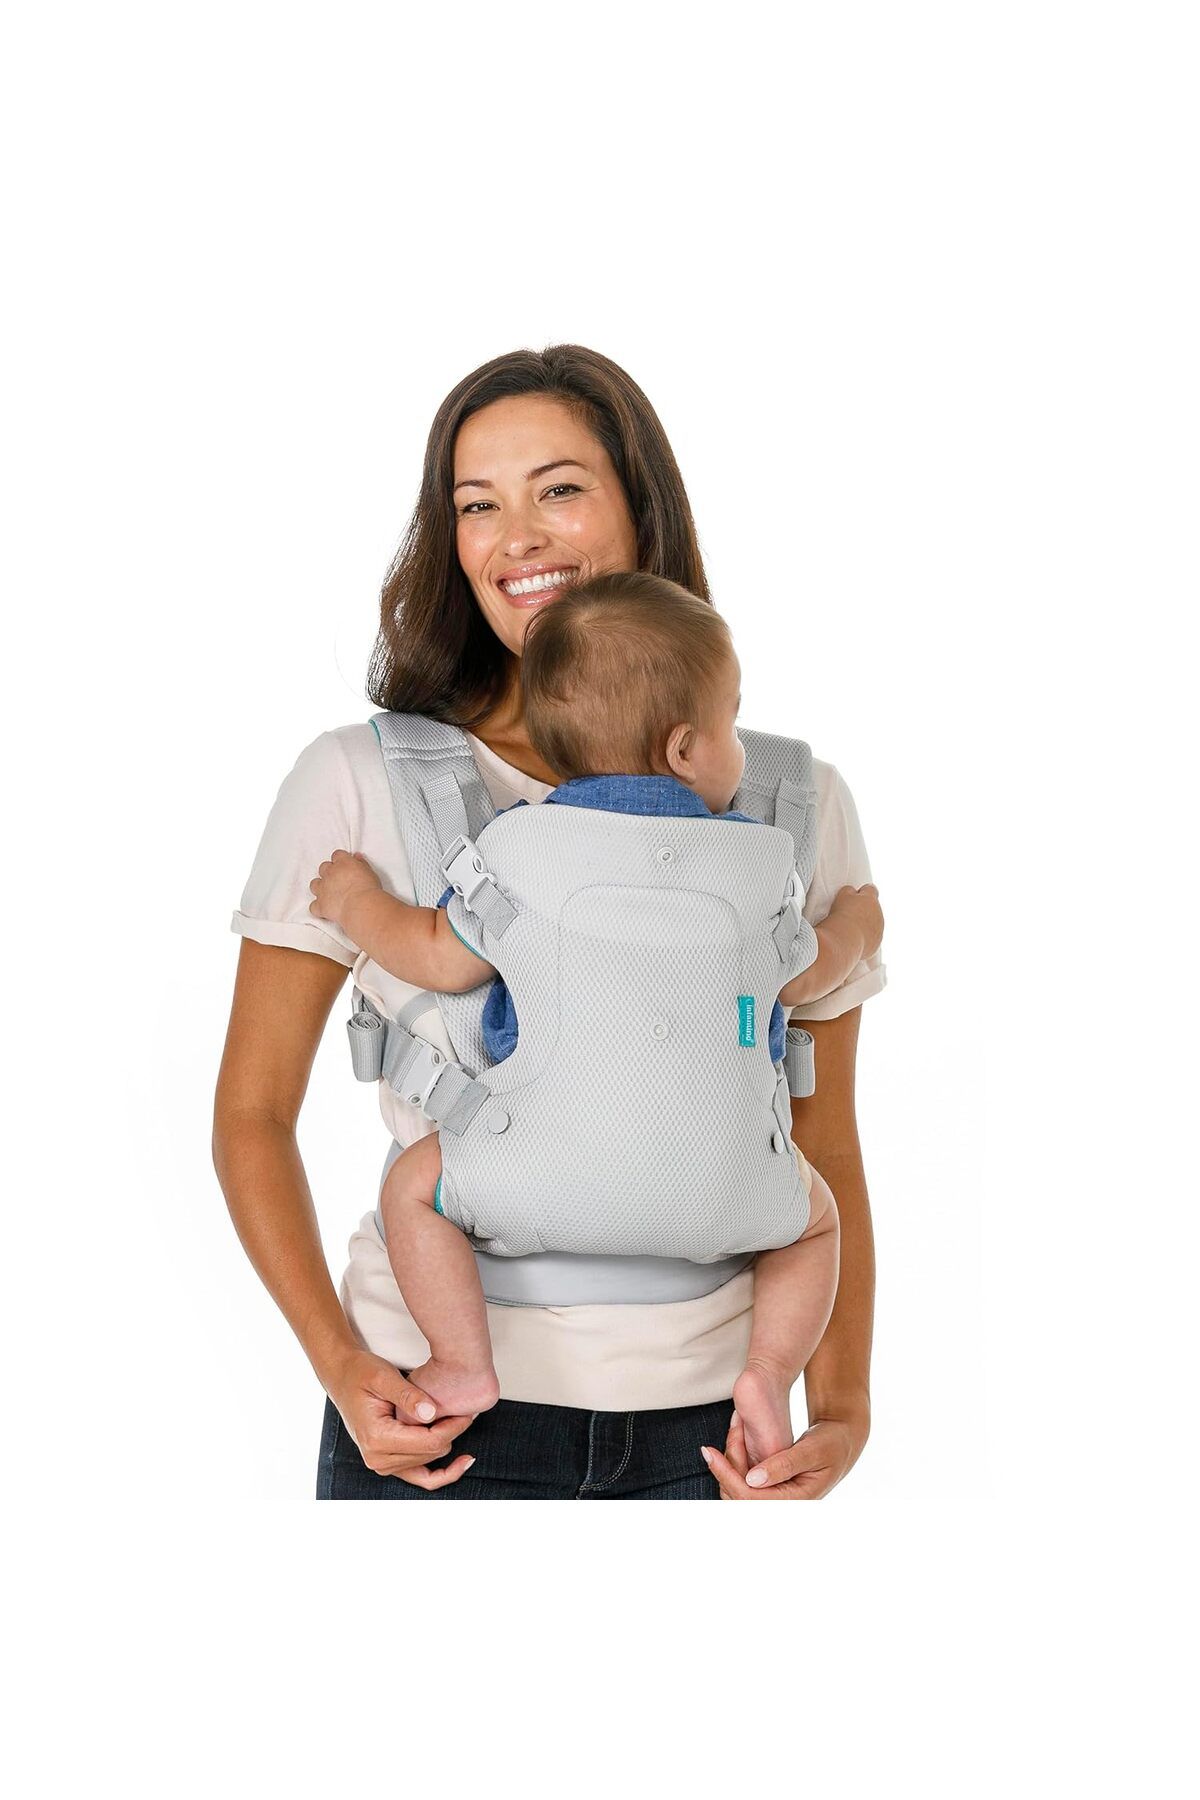 Infantino Flip Gelişmiş 4'ü 1 Arada Bebek Taşıyıcı - 4 Taşıma Pozisyonlu Ergonomik Bebek Taşıyıcı